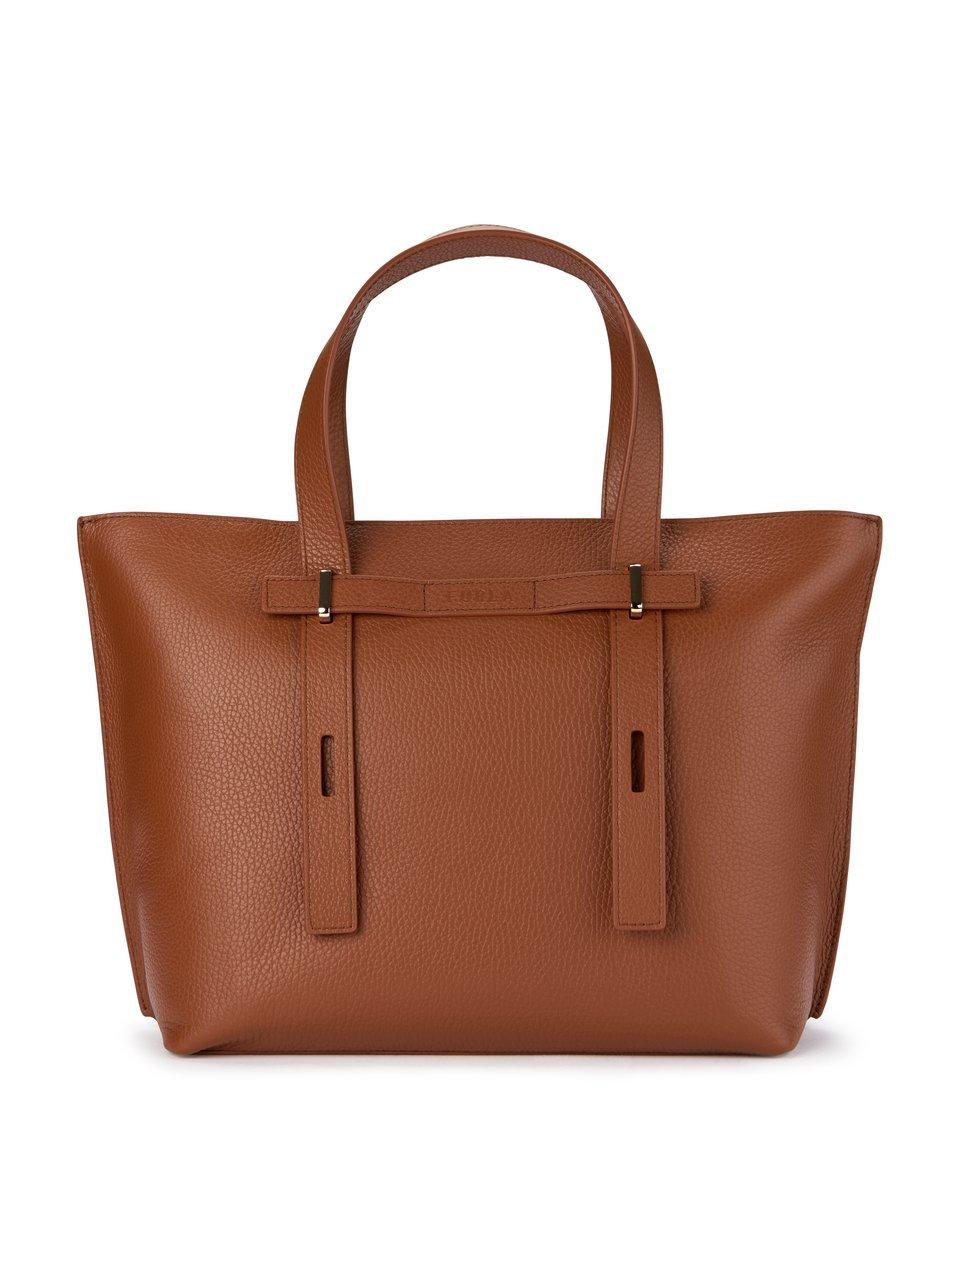 Image of Handbag Giove Furla brown